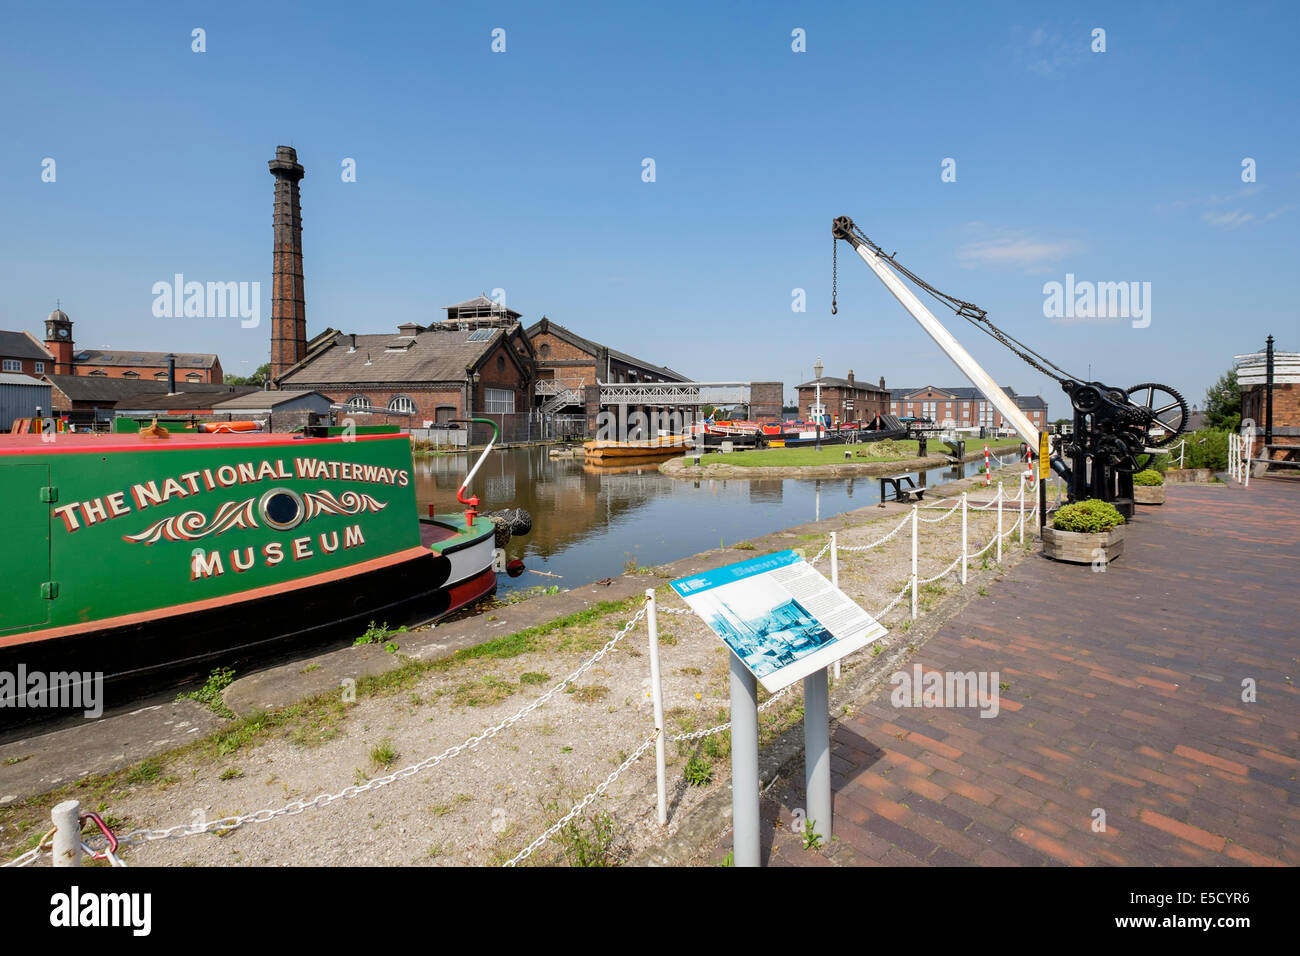 Du canal de Shropshire Union avec panneau d'information au niveau national Waterways Museum à Ellesmere Port Cheshire England UK Angleterre Wirral Banque D'Images